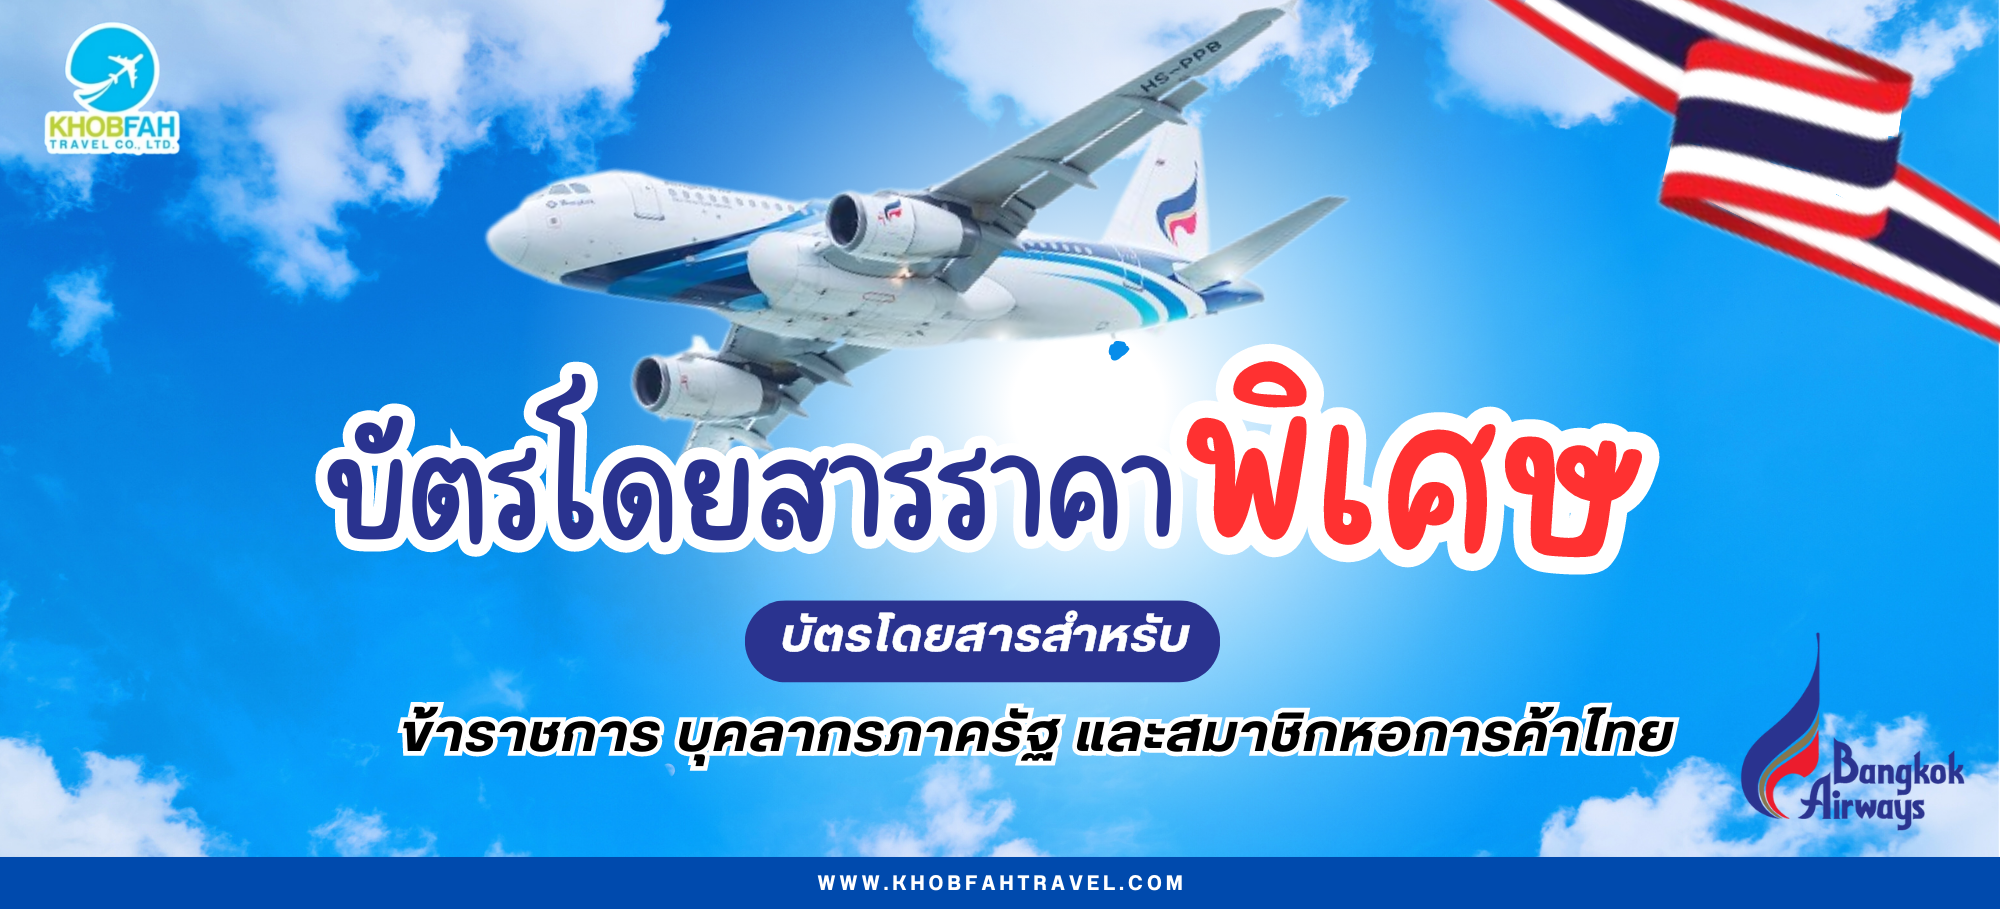 บัตรโดยสารราคาพิเศษ สายการบินบางกอกแอร์ ตั๋วข้าราชการ และพนักงานรัฐวิสาหกิจ (Bangkok Airways Government Ticket)